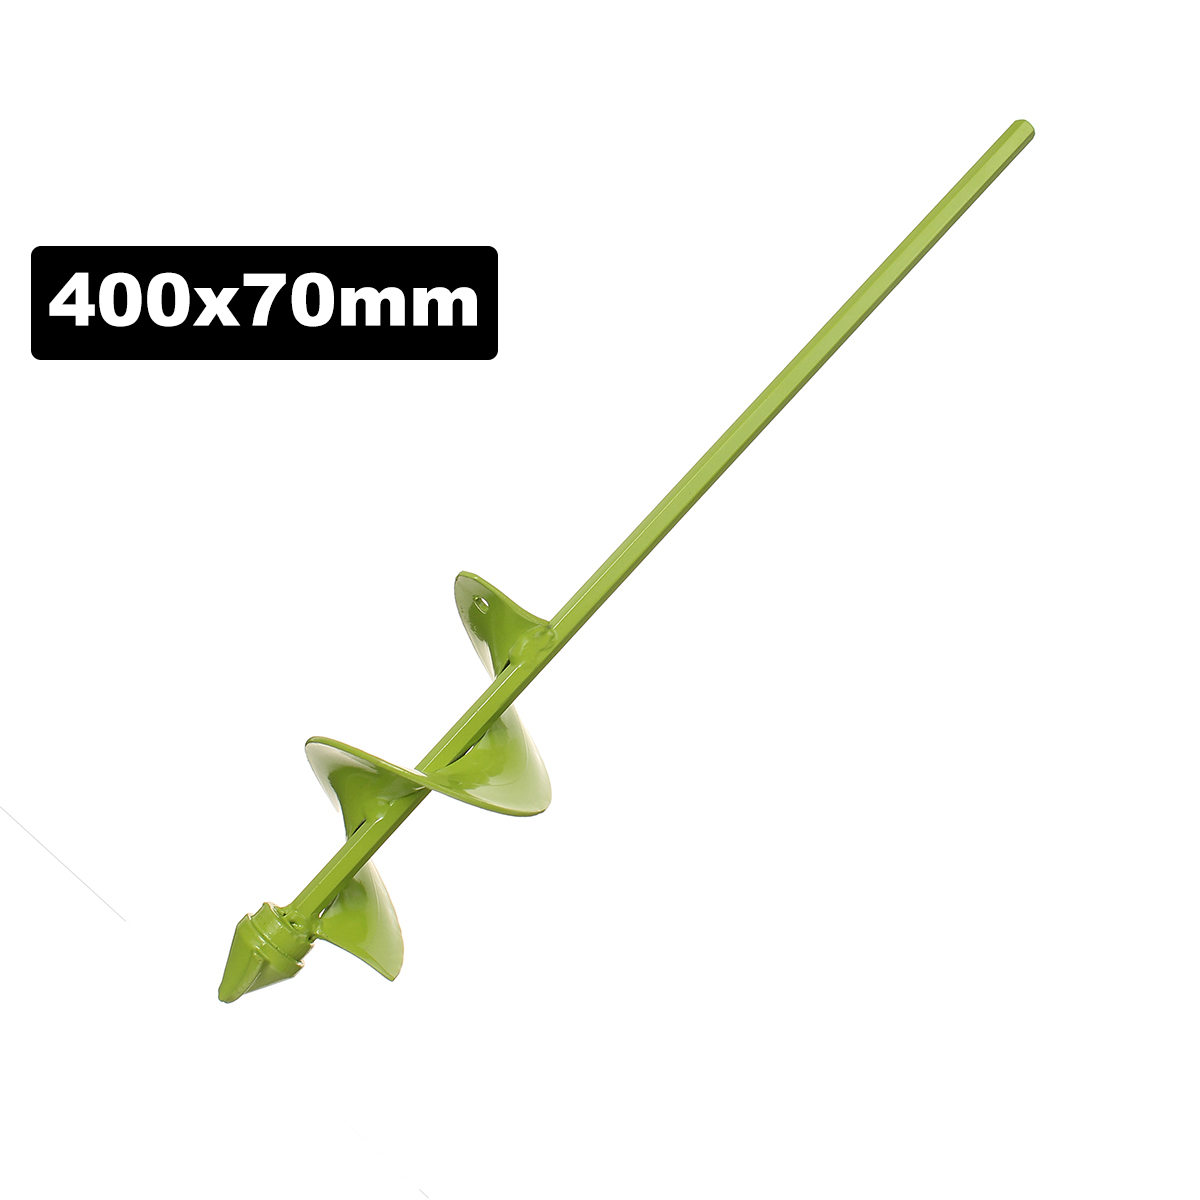 70mm-Wide-Green-Garden-Auger-Drill-Bit-Electric-Drill-Bit-Digs-Hole-400220mm-Length-1578436-4